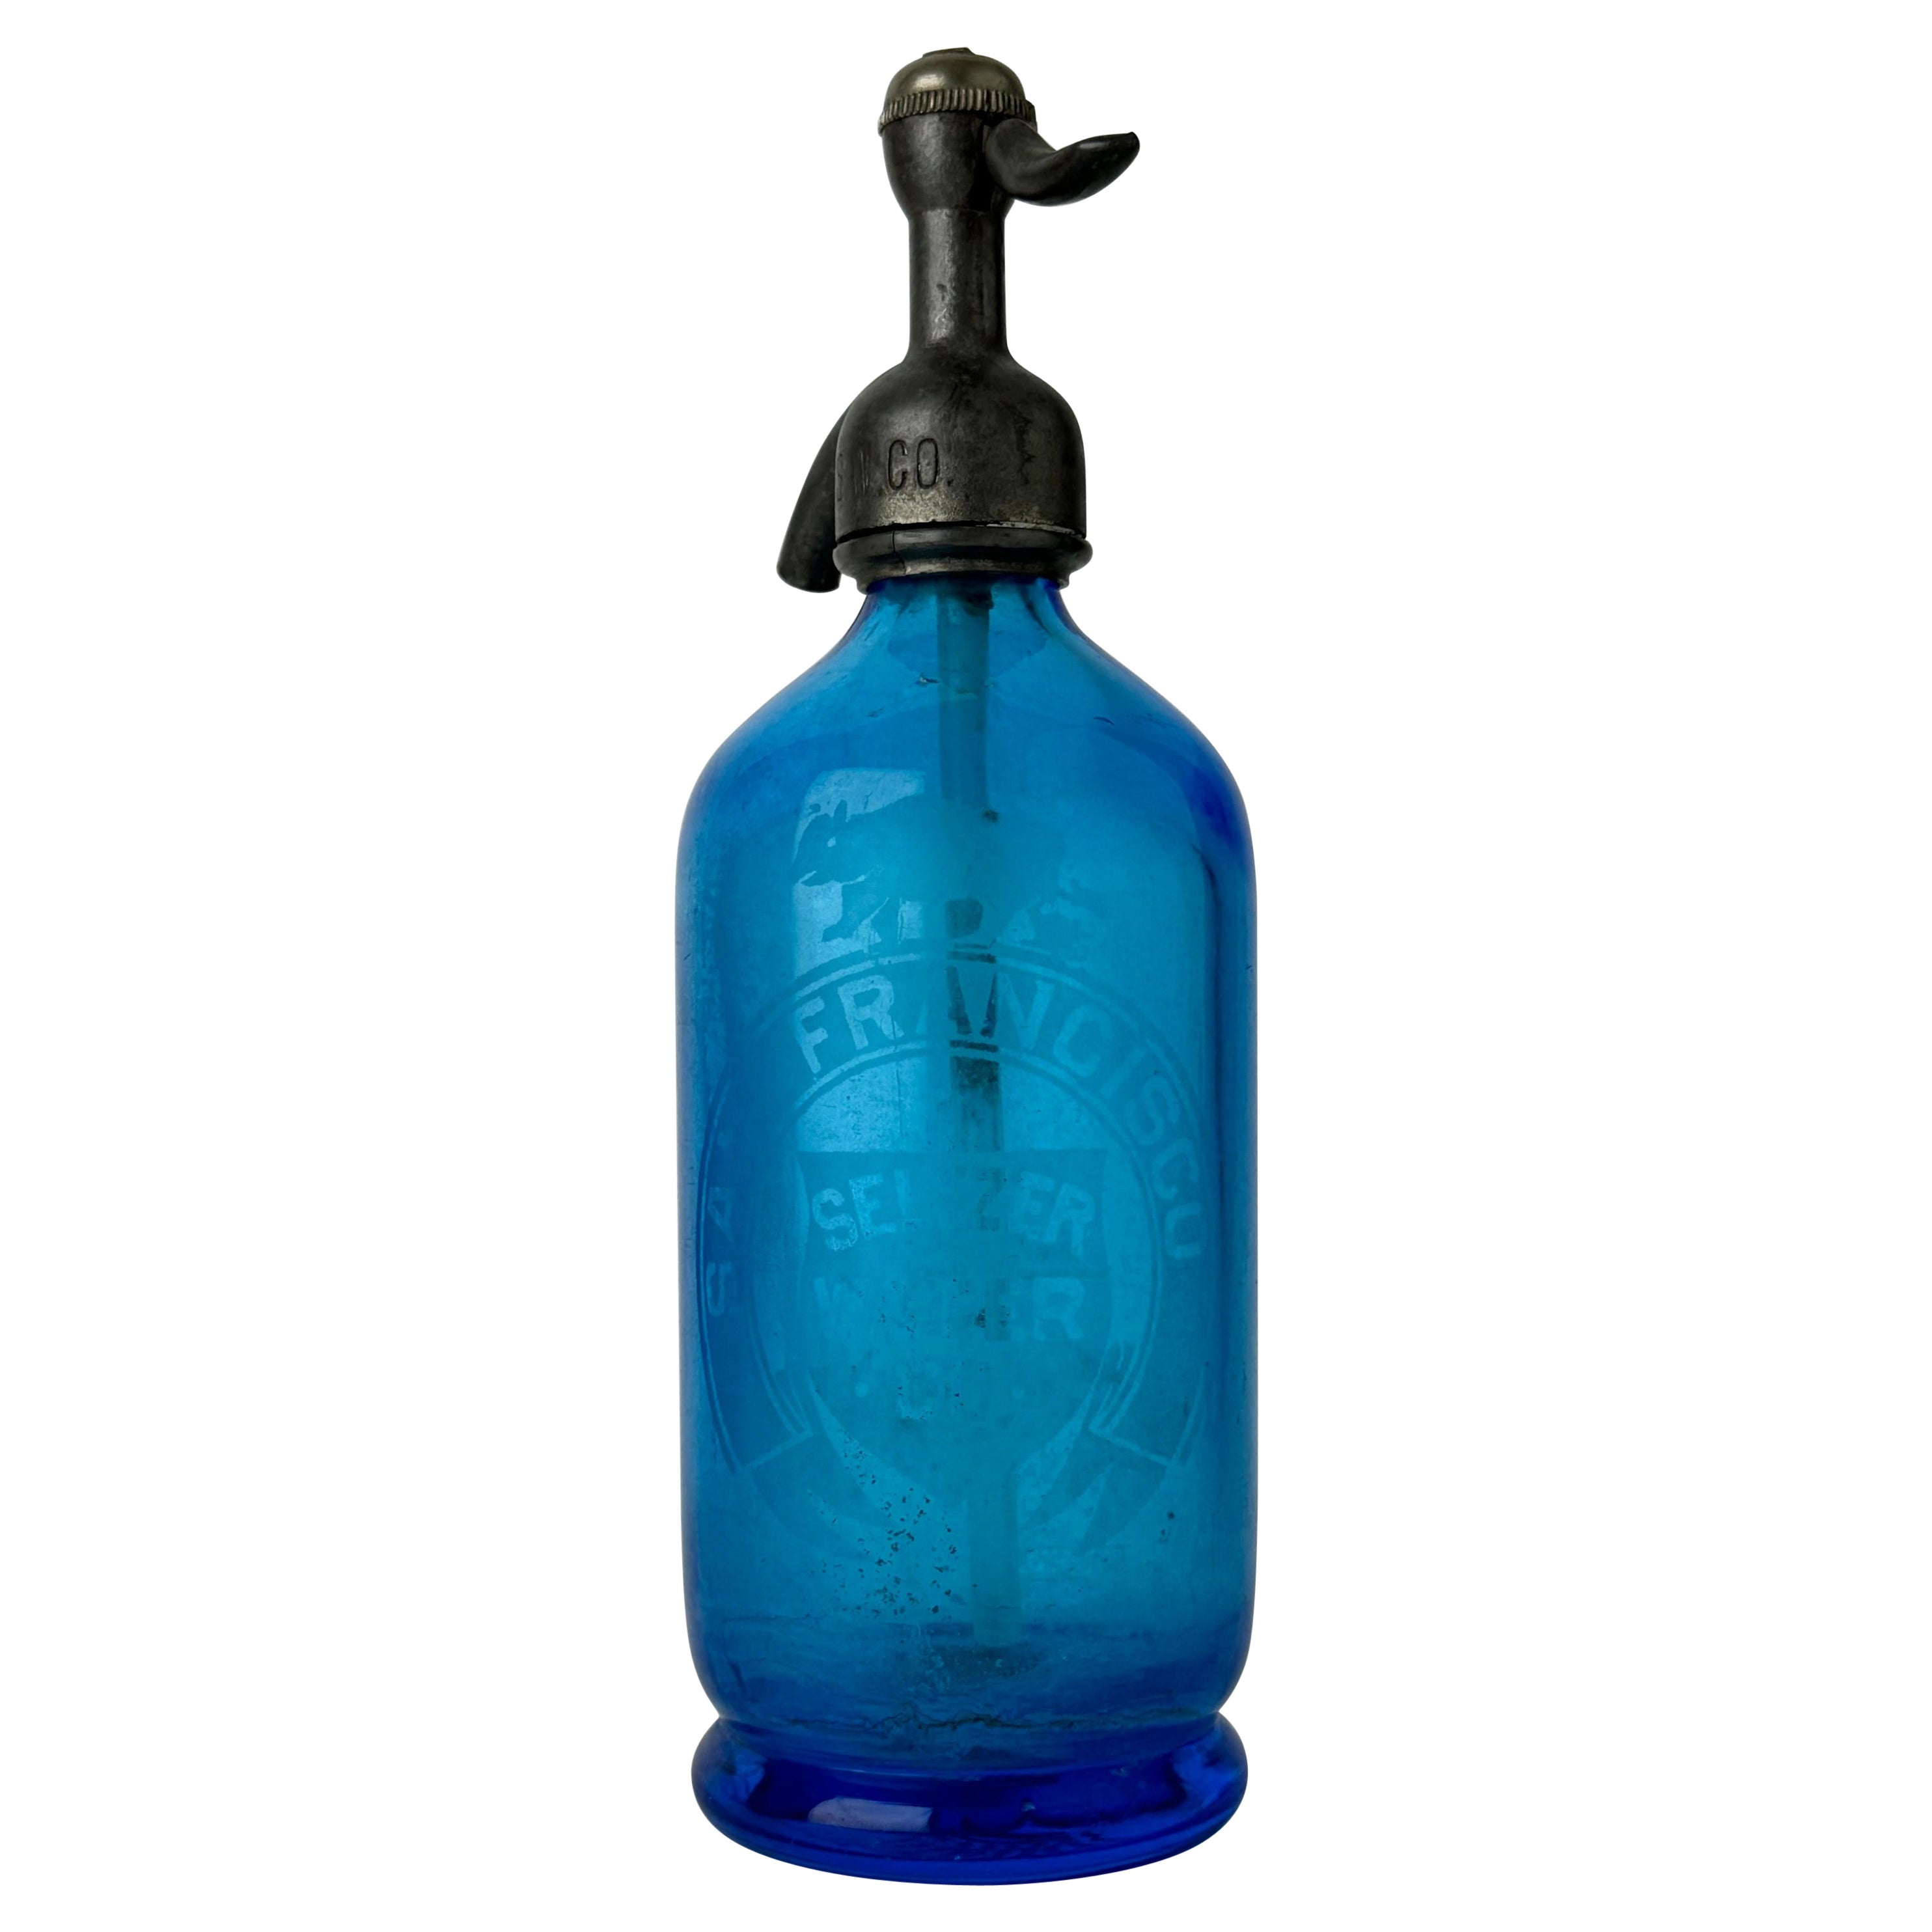 Antike San Francisco Seltzer Water Co. Seltzerflasche aus blauem Glas 